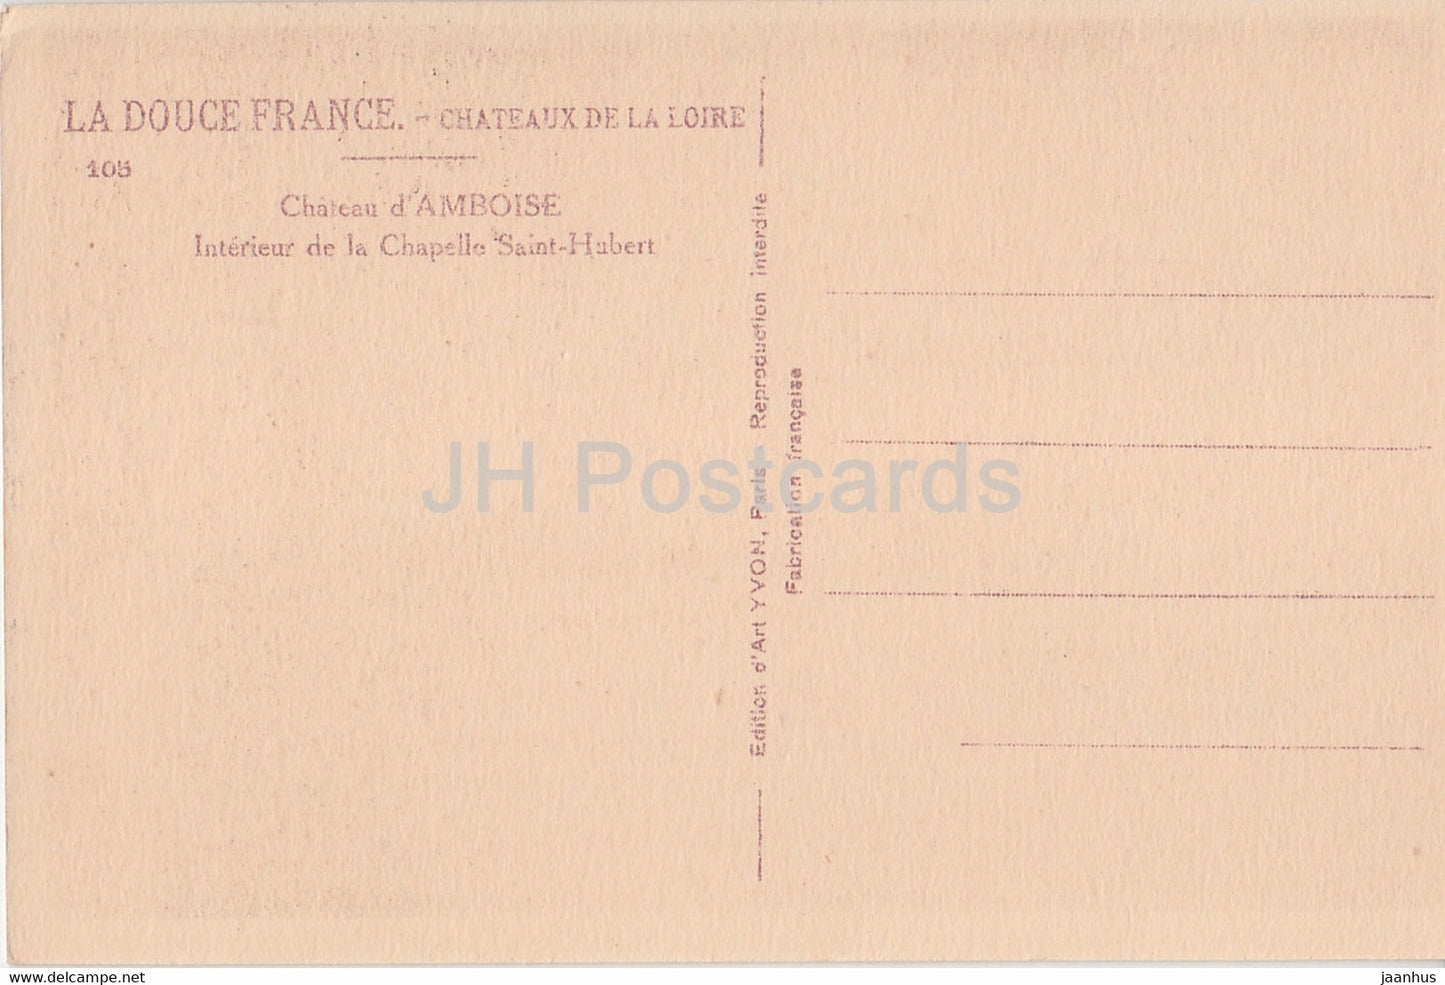 Château d'Amboise - Intérieur de la Chapelle Saint Hubert - 105 - château - carte postale ancienne - France - inutilisé